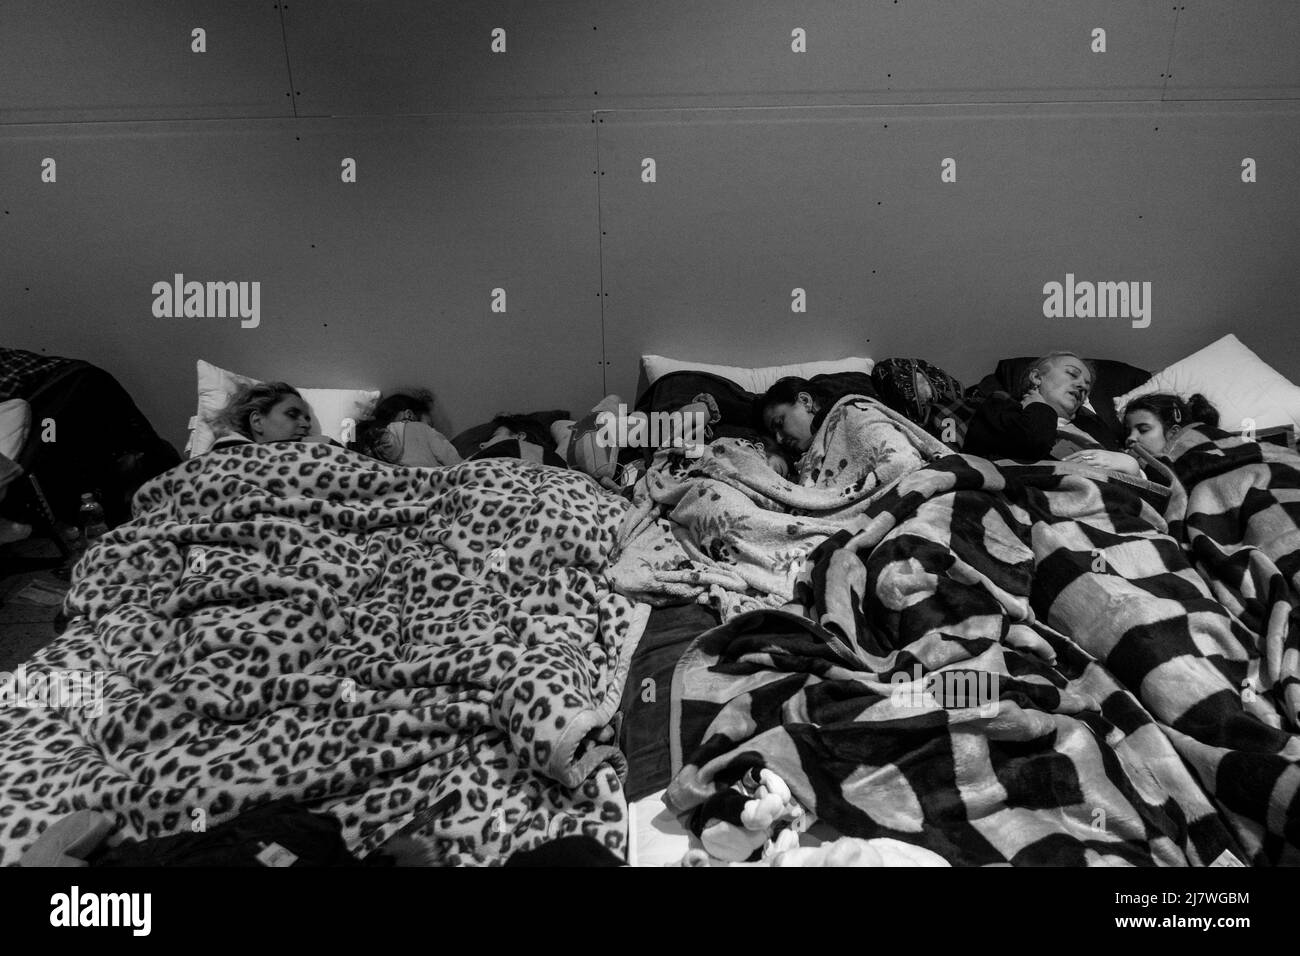 Michael Bunel / Le Pictorium - Refugiados en la frontera polaco-ucraniana tras la invasión de Ucrania por el ejército ruso - 5/3/2022 - Polonia / Foto de stock